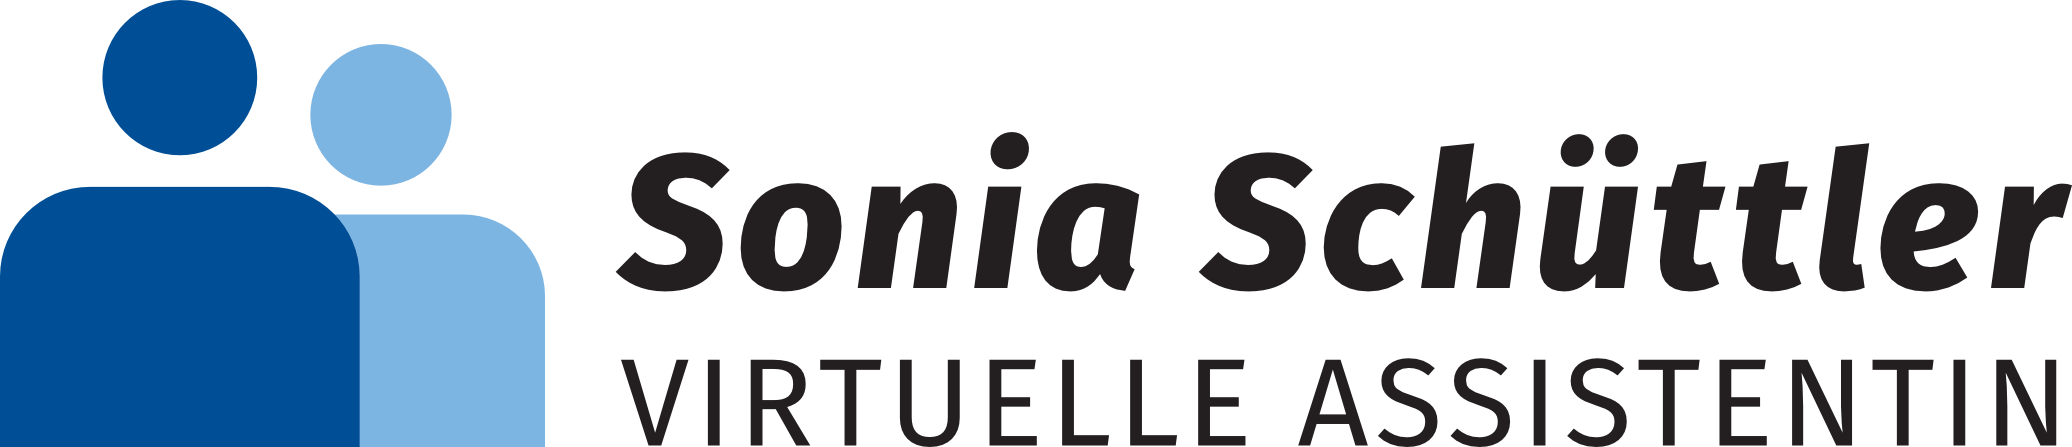 Sonia Schüttler - Deine virtuelle Assistentin